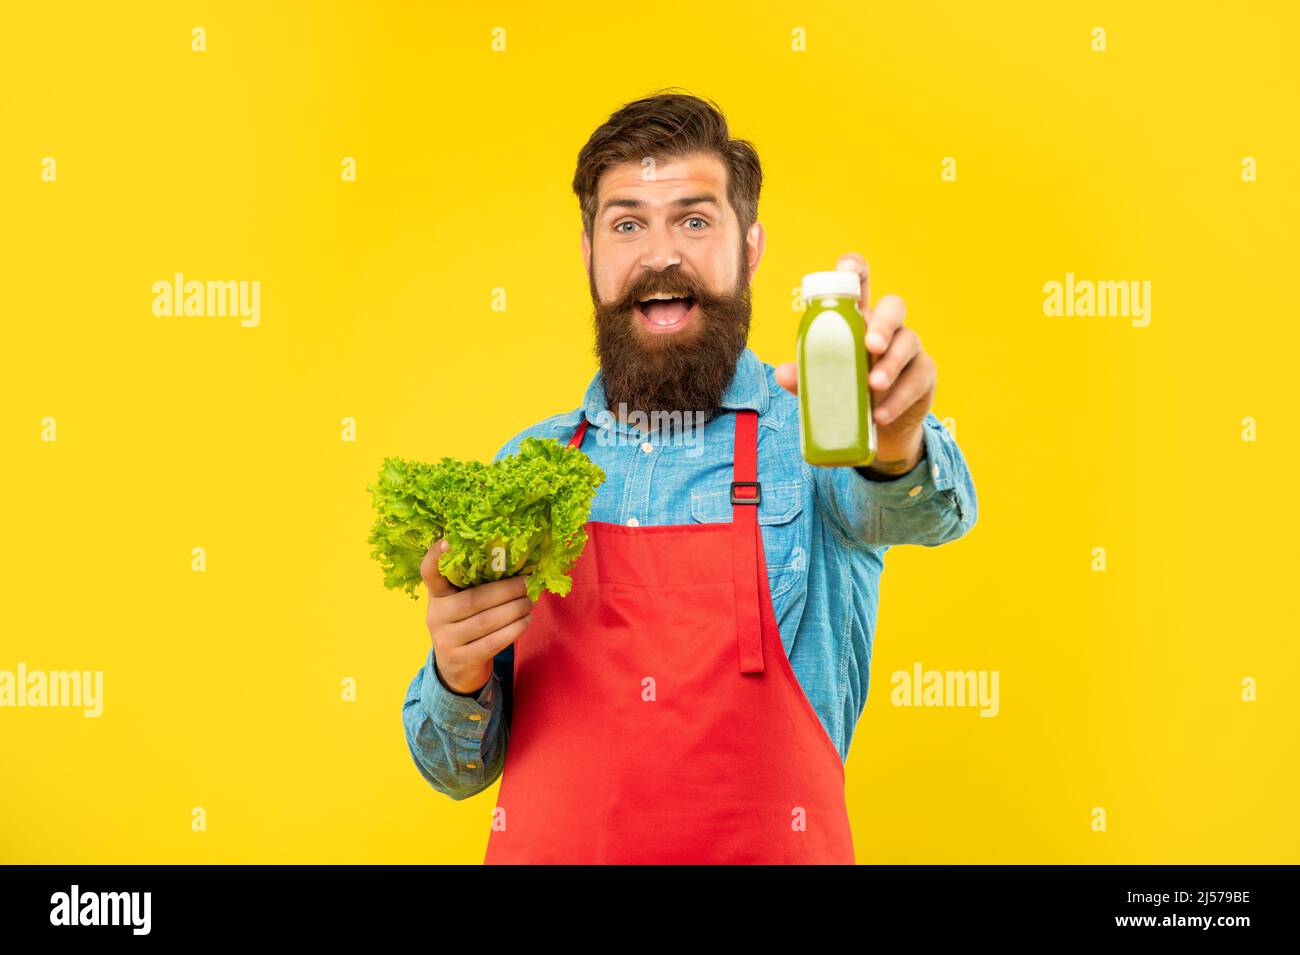 Happy man giving juice bottle holding fresh lettuce yellow background, juice barkeeper Stock Photo